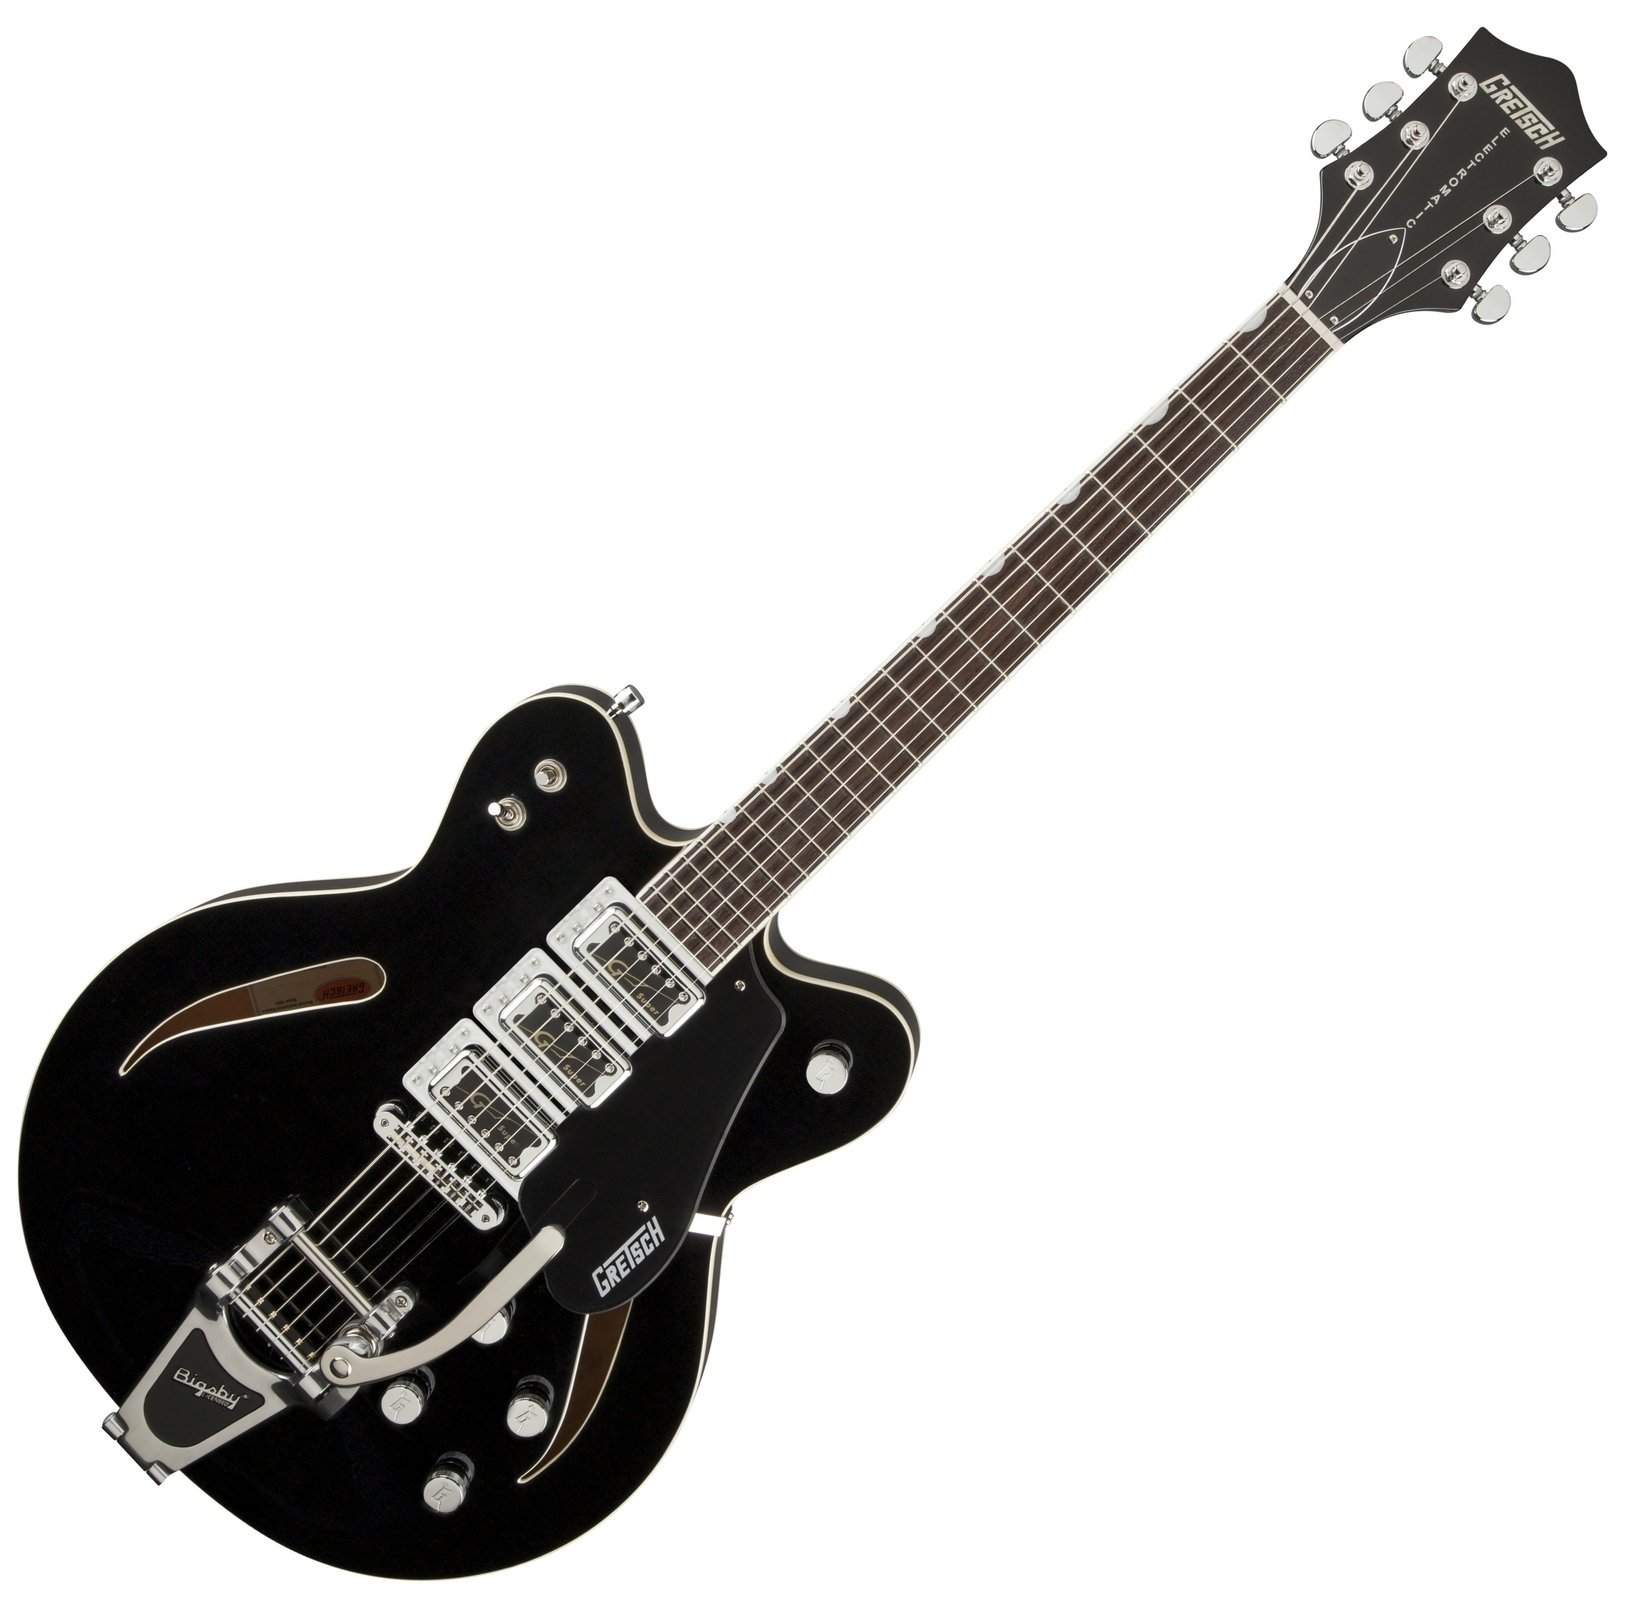 Guitarra semi-acústica Gretsch G5622T-CB Electromatic Black